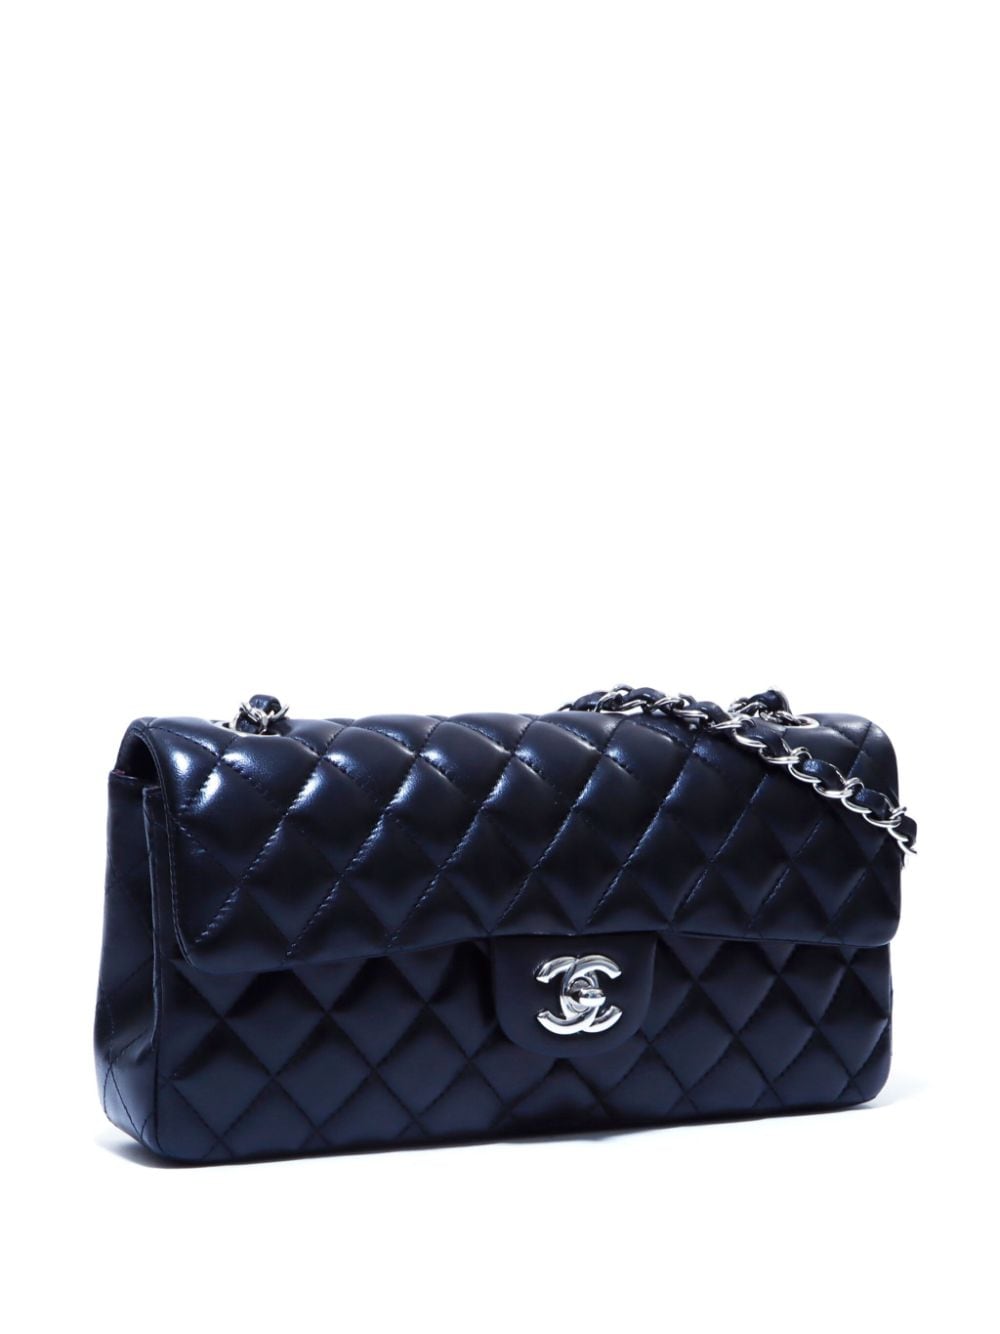 Pre-owned Chanel 2013 Flap Shoulder Bag In Black